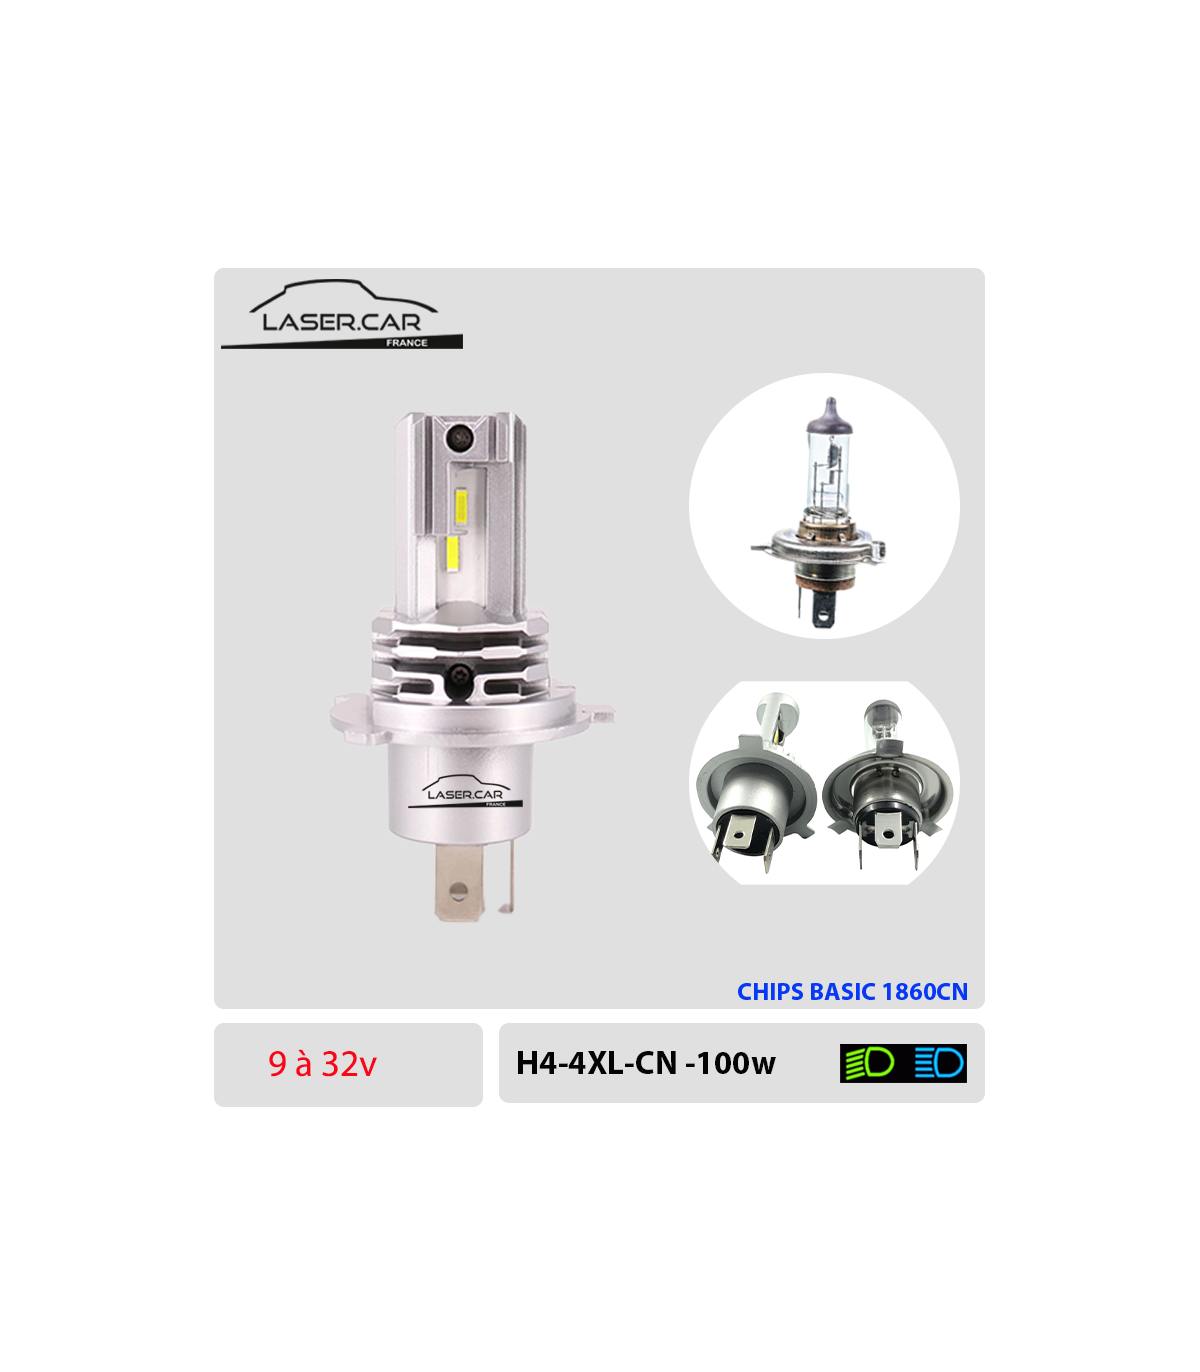  Zethors Ampoules H4 LED Voiture avec Ventilateur 100W